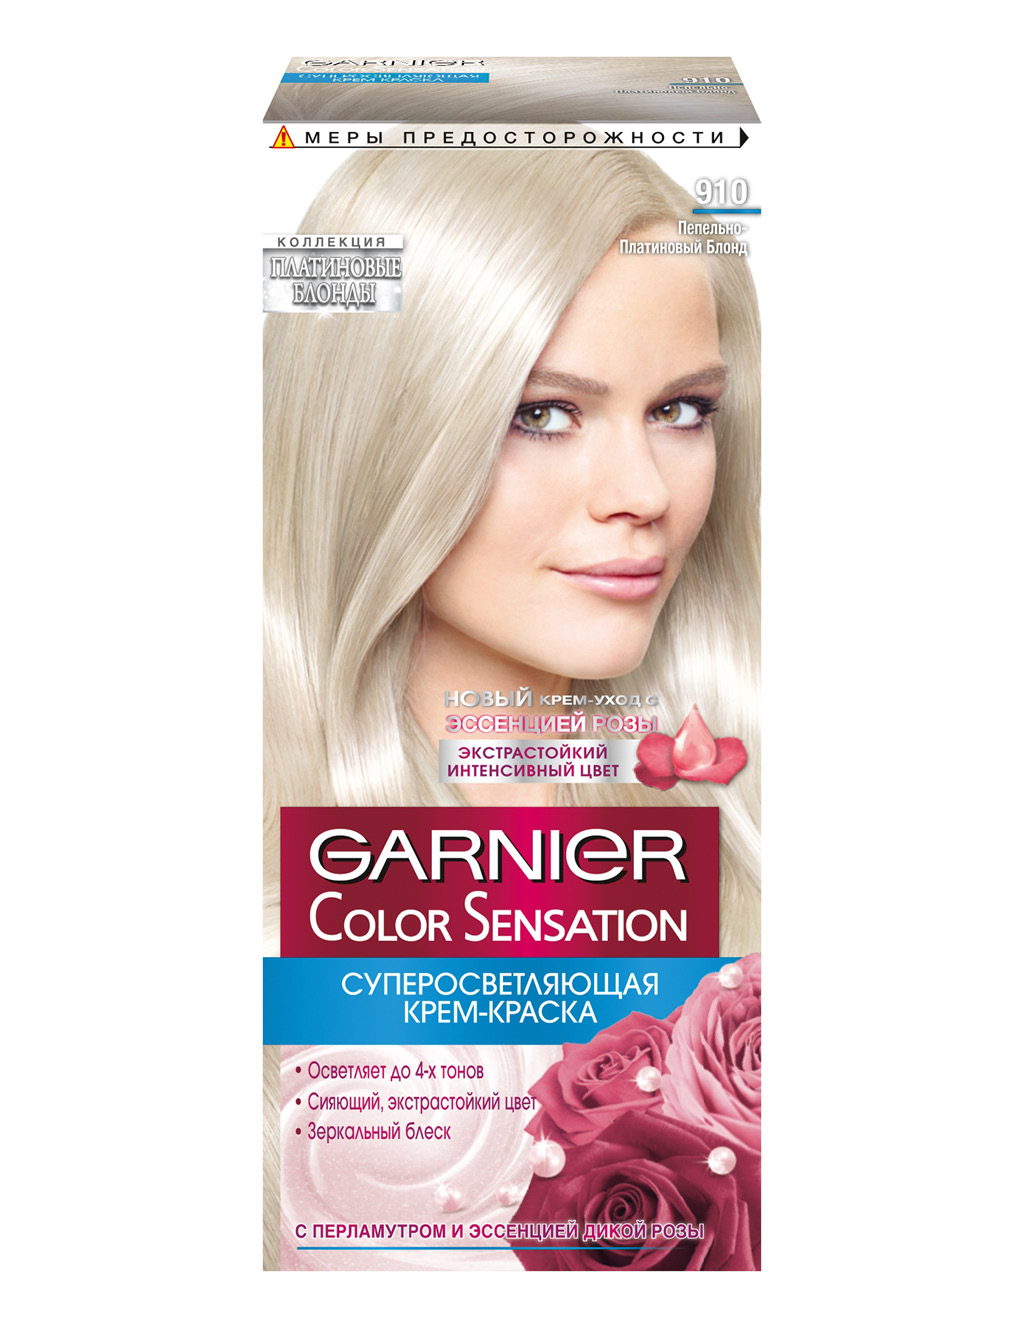 Краска для волос Garnier Color Sensation тон 910 (Пепельно-серебрaистый блонд)